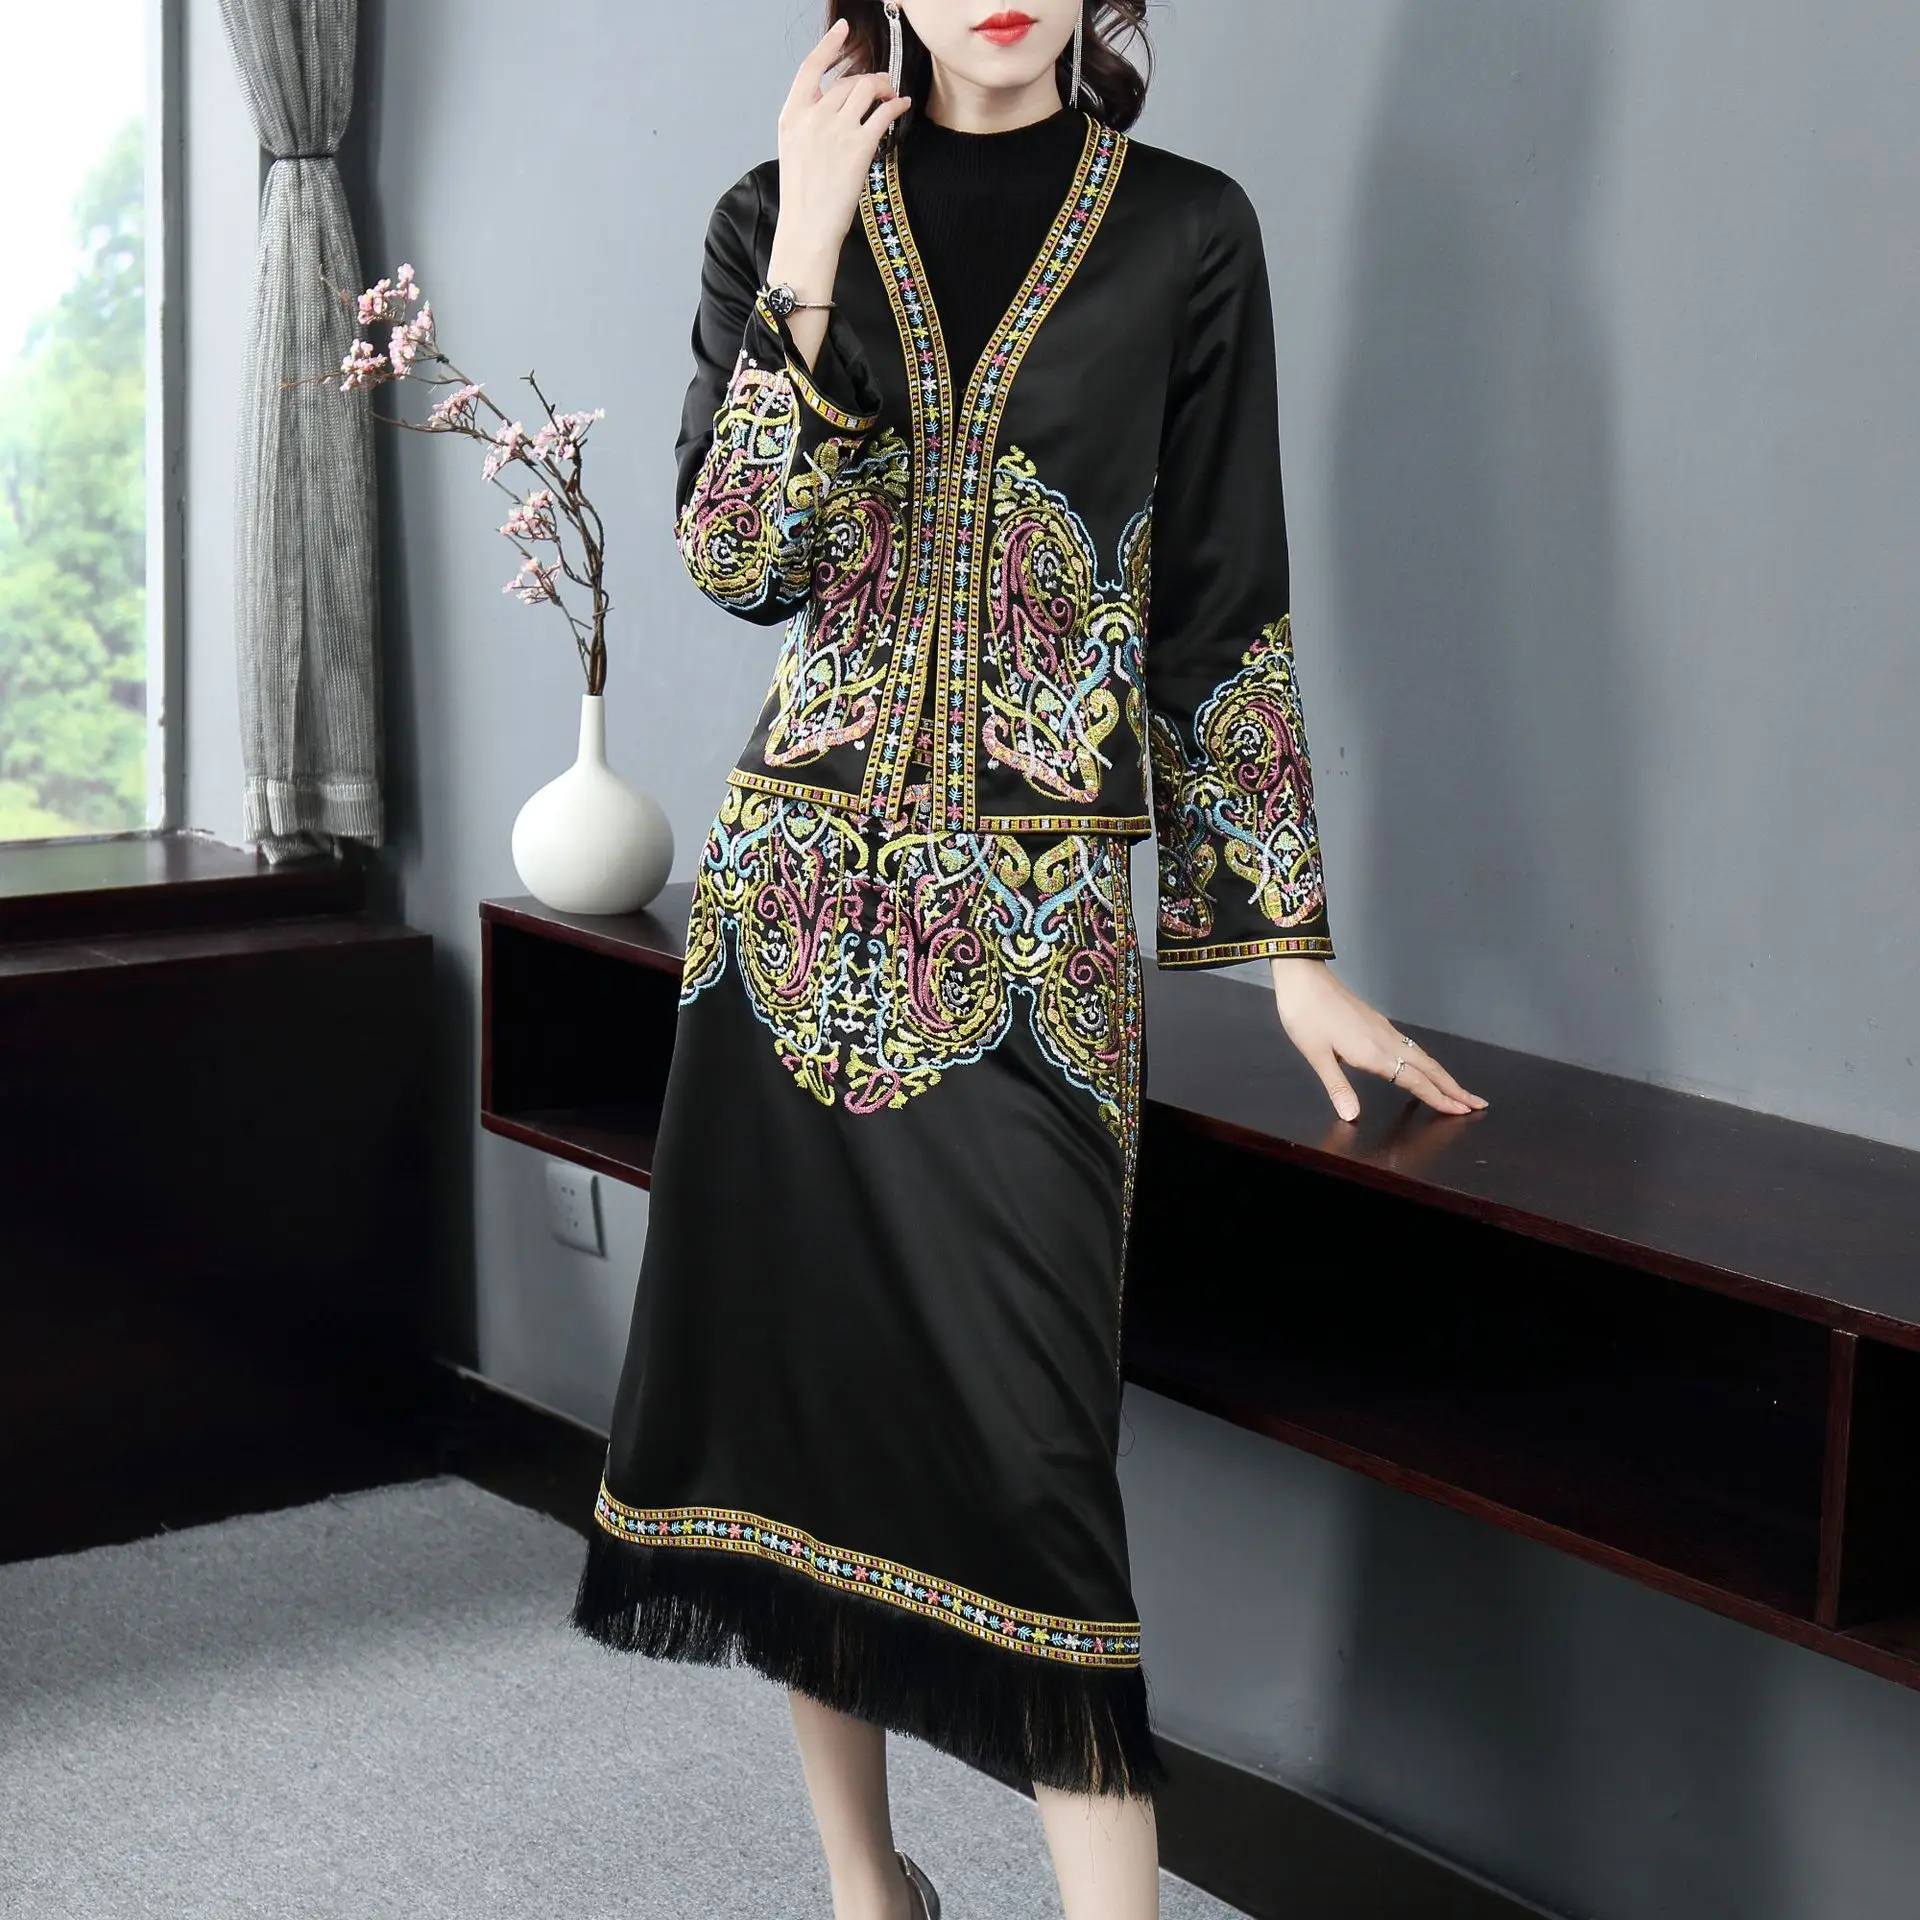 Ранняя весна девушка леди новые классические элегантные Национальный, этнический стиль в этническом китайском стиле с вышивкой Платье с кисточками комплект из двух предметов юбка-карандаш